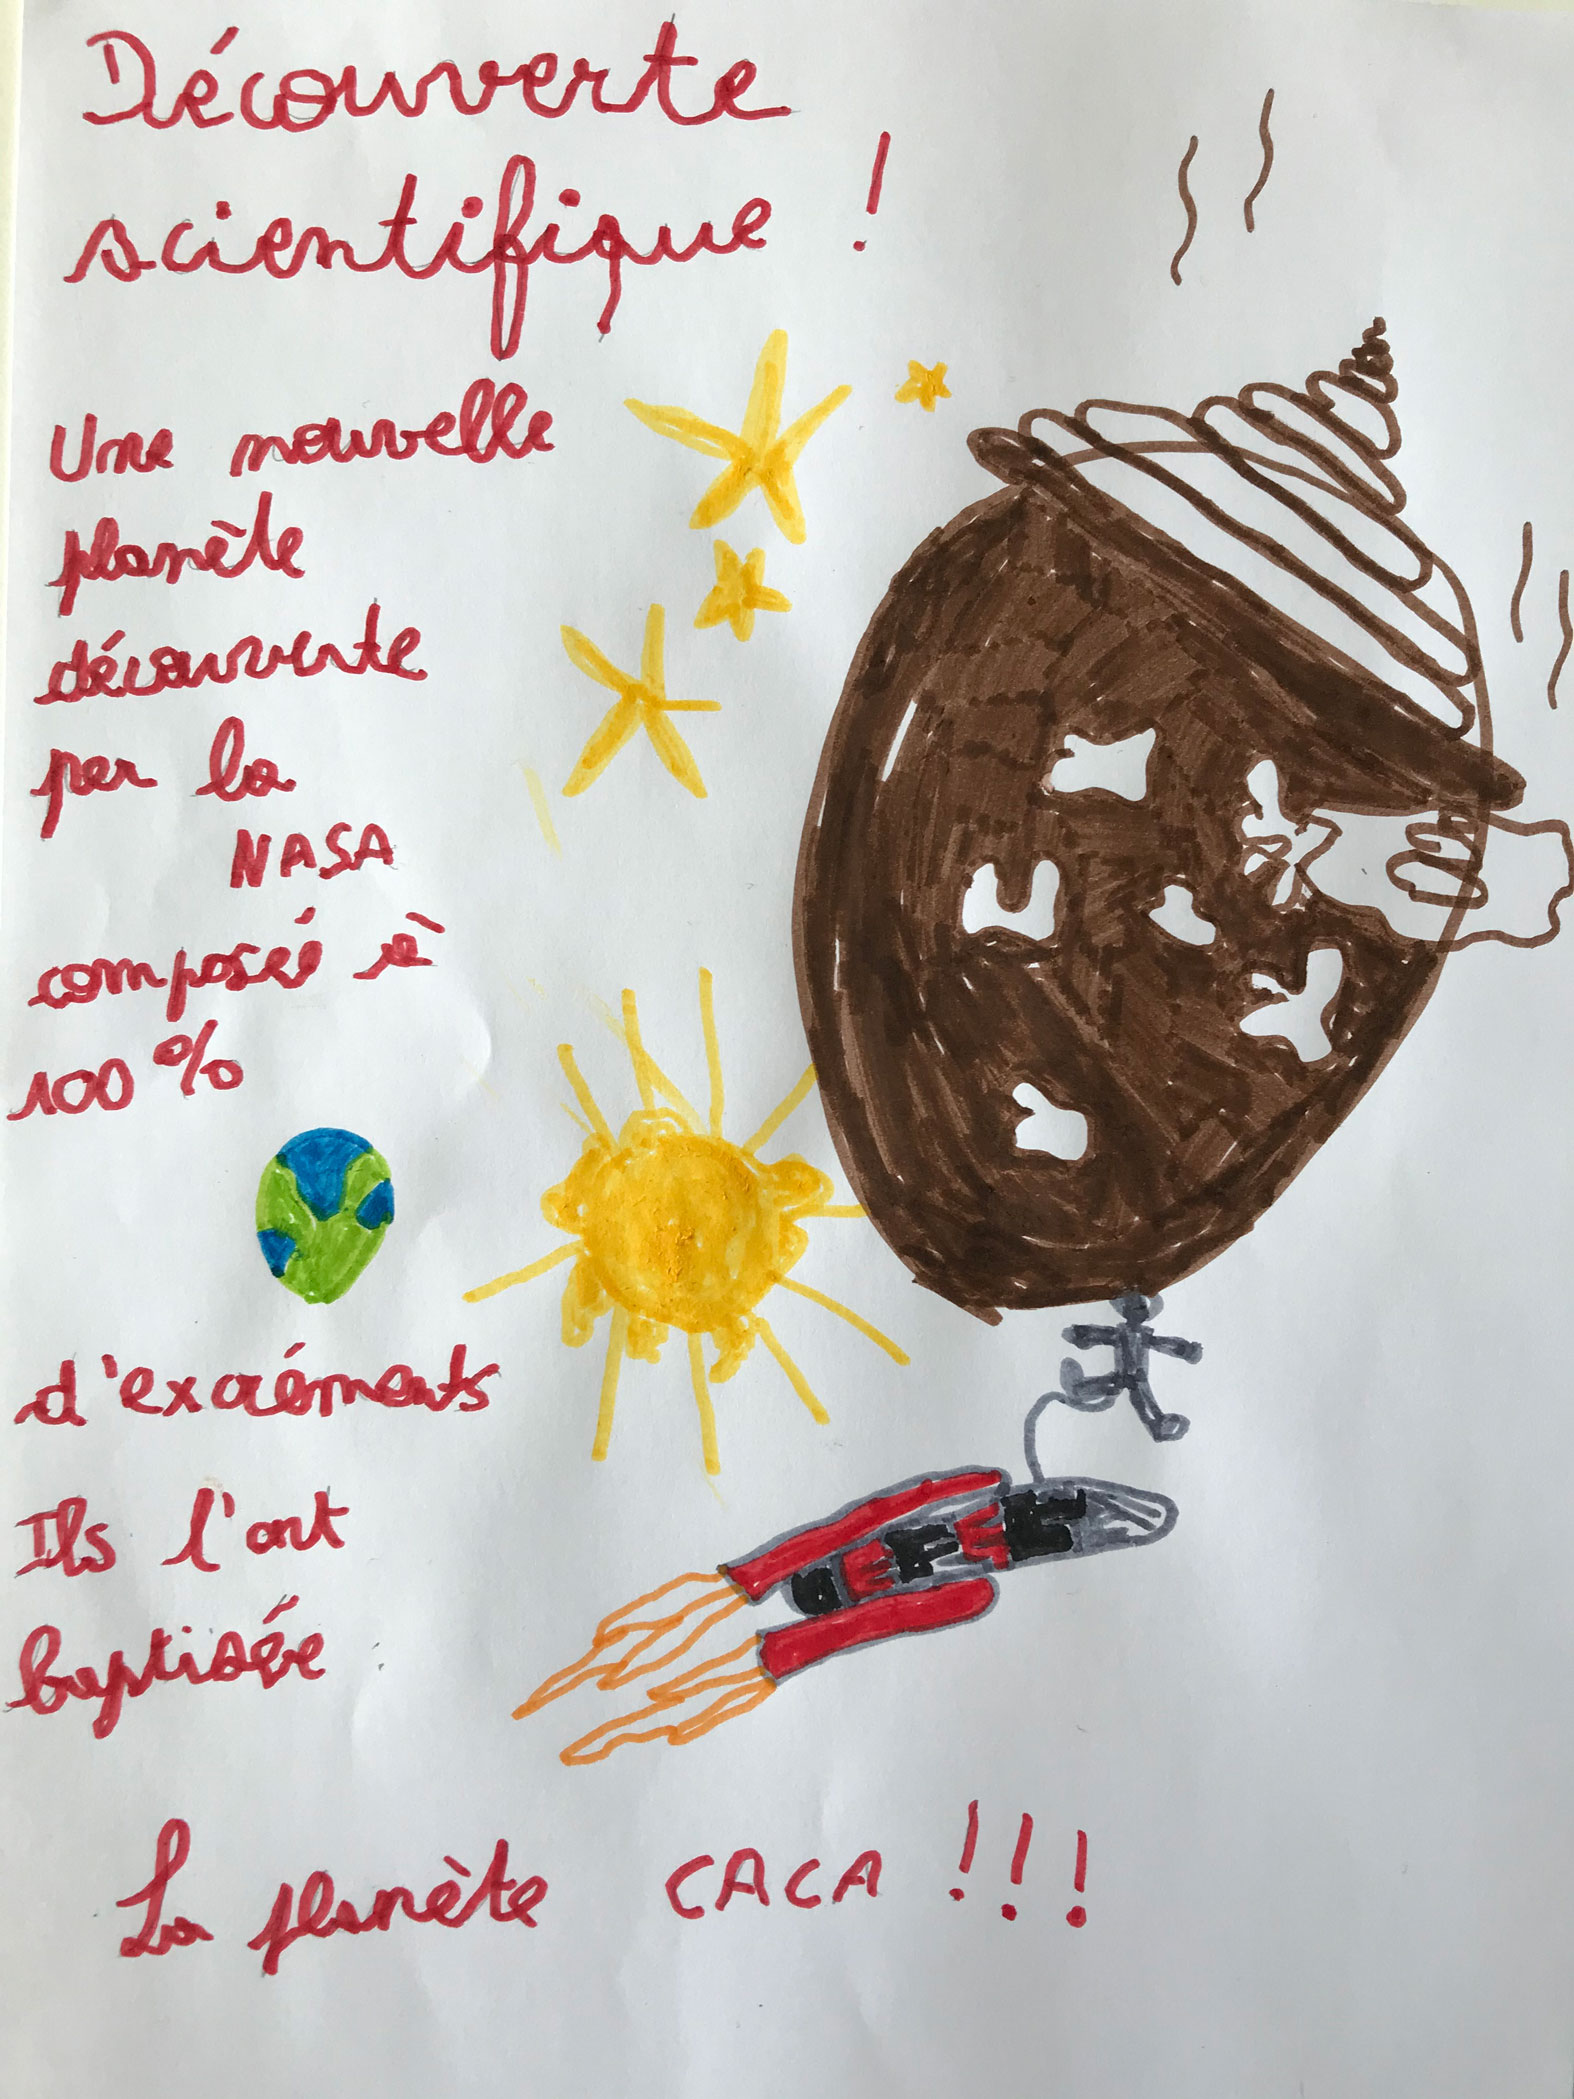 Concours Mordelire "Fais ta une !" - Andréa 6 ans